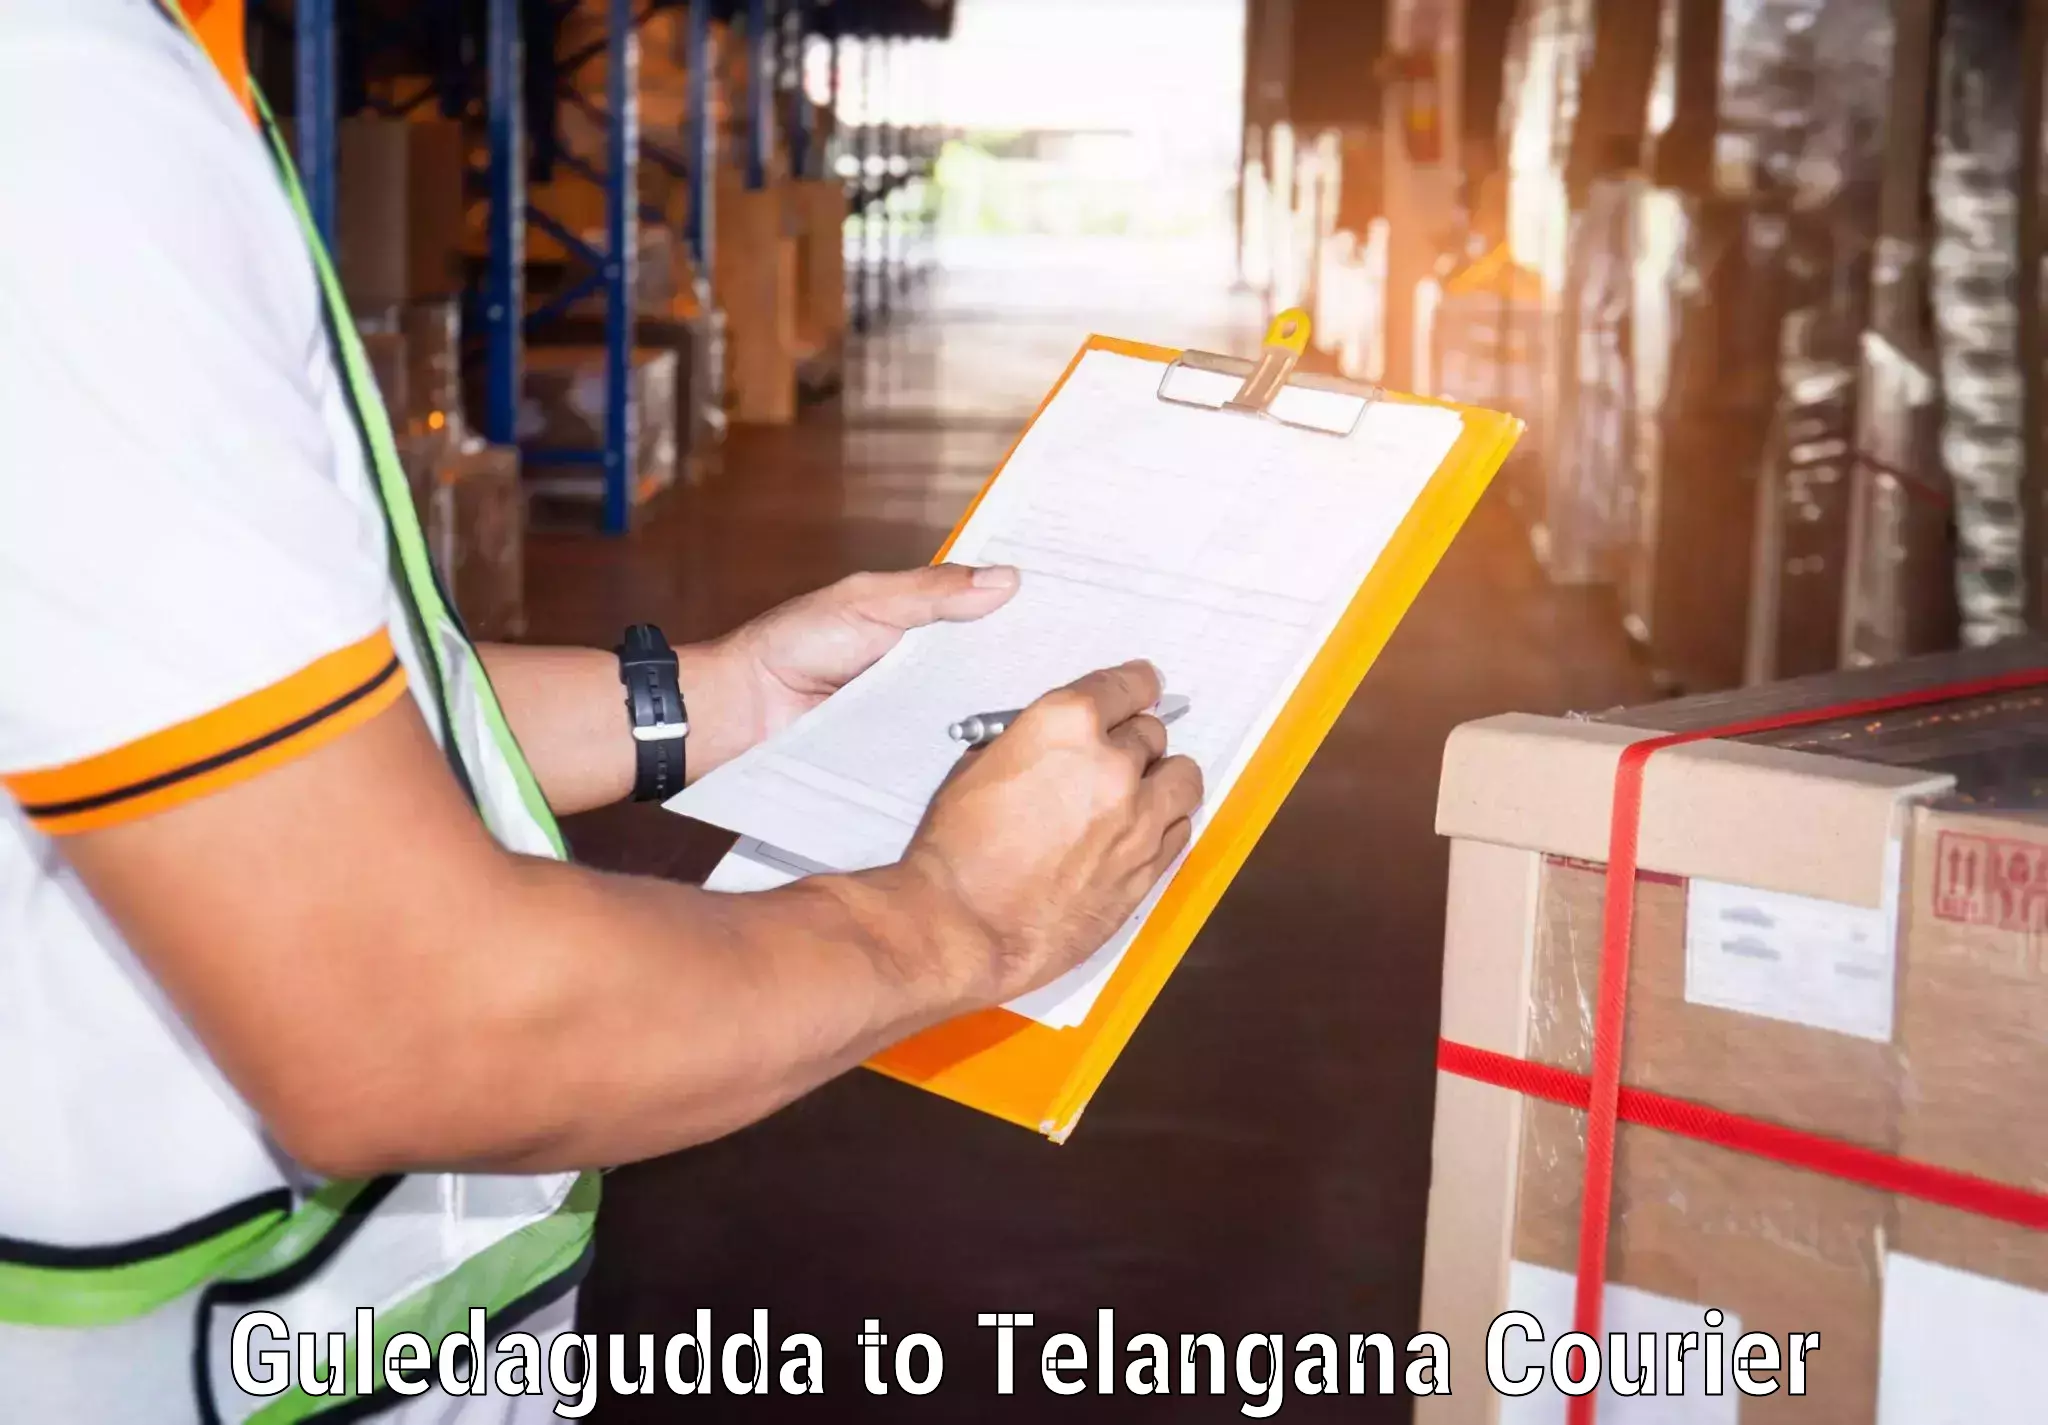 Courier services Guledagudda to Gangadhara